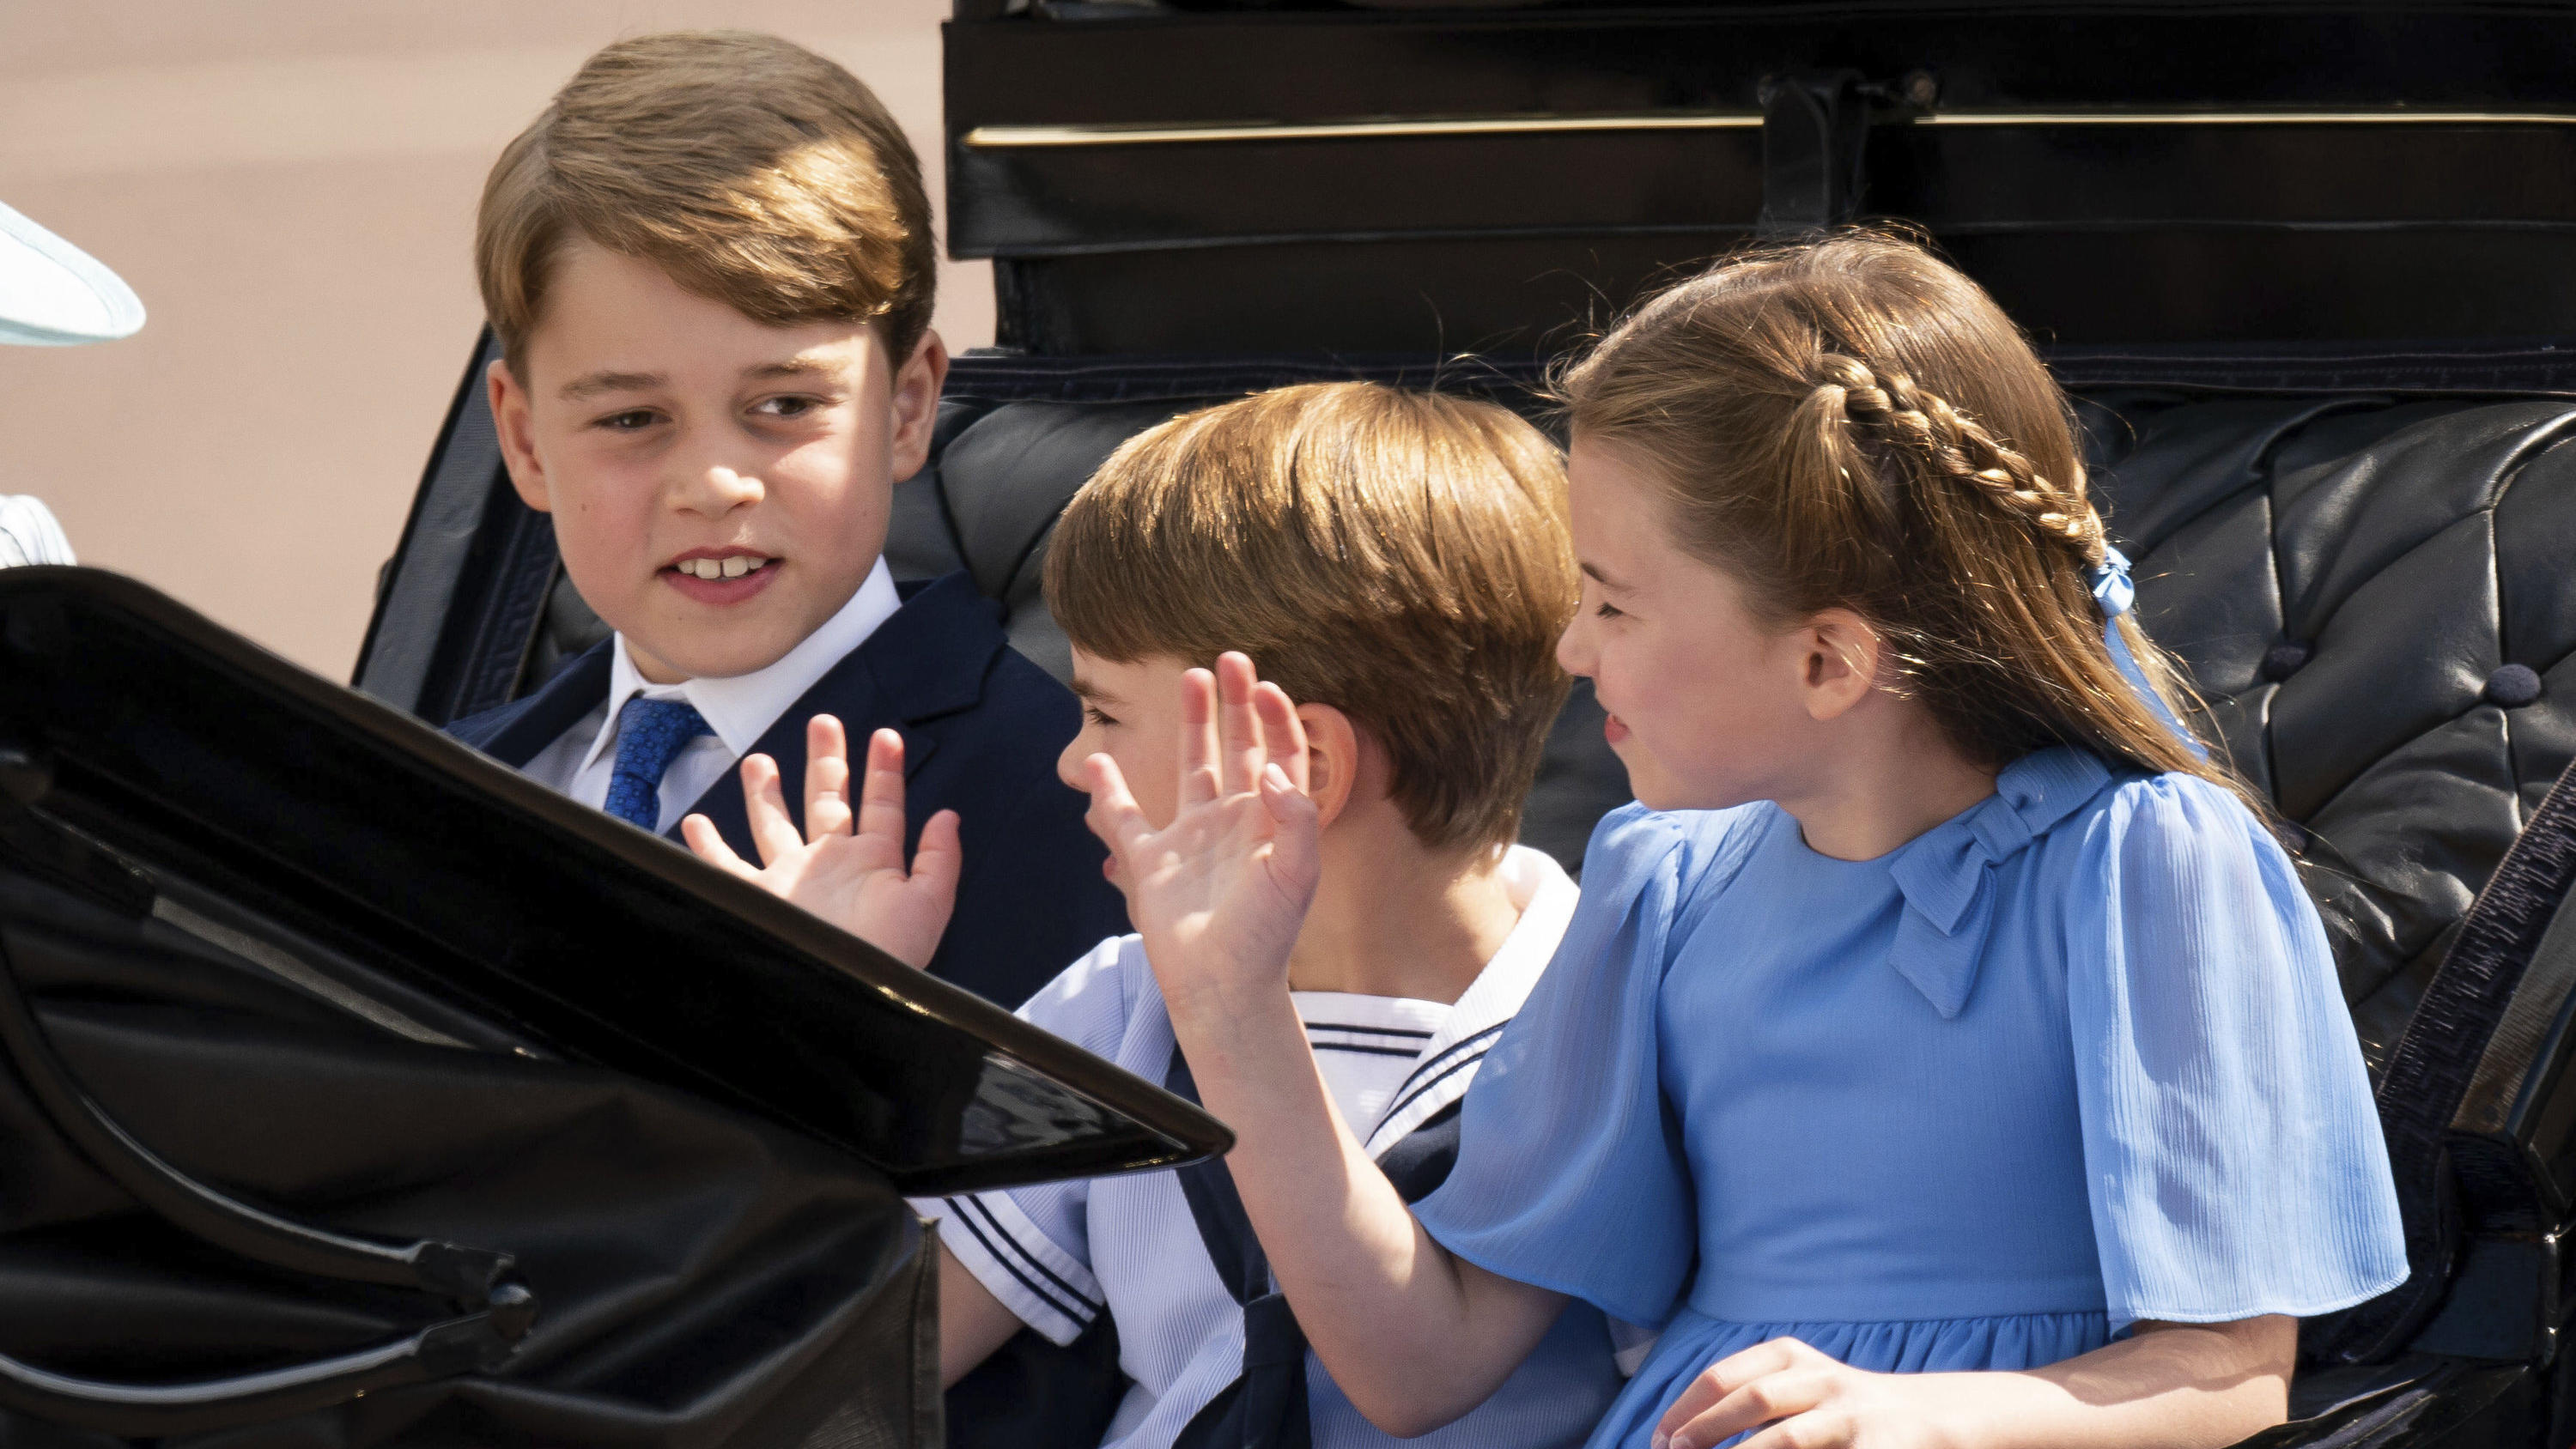 02.06.2022, Großbritannien, London: Prinz George (l-r), Prinz Louis und Prinzessin Charlotte verlassen den Buckingham Palast am ersten von vier Tagen der Feierlichkeiten zum Platinjubiläum der Queen. In London beginnen die Feierlichkeiten zum 70. Thr